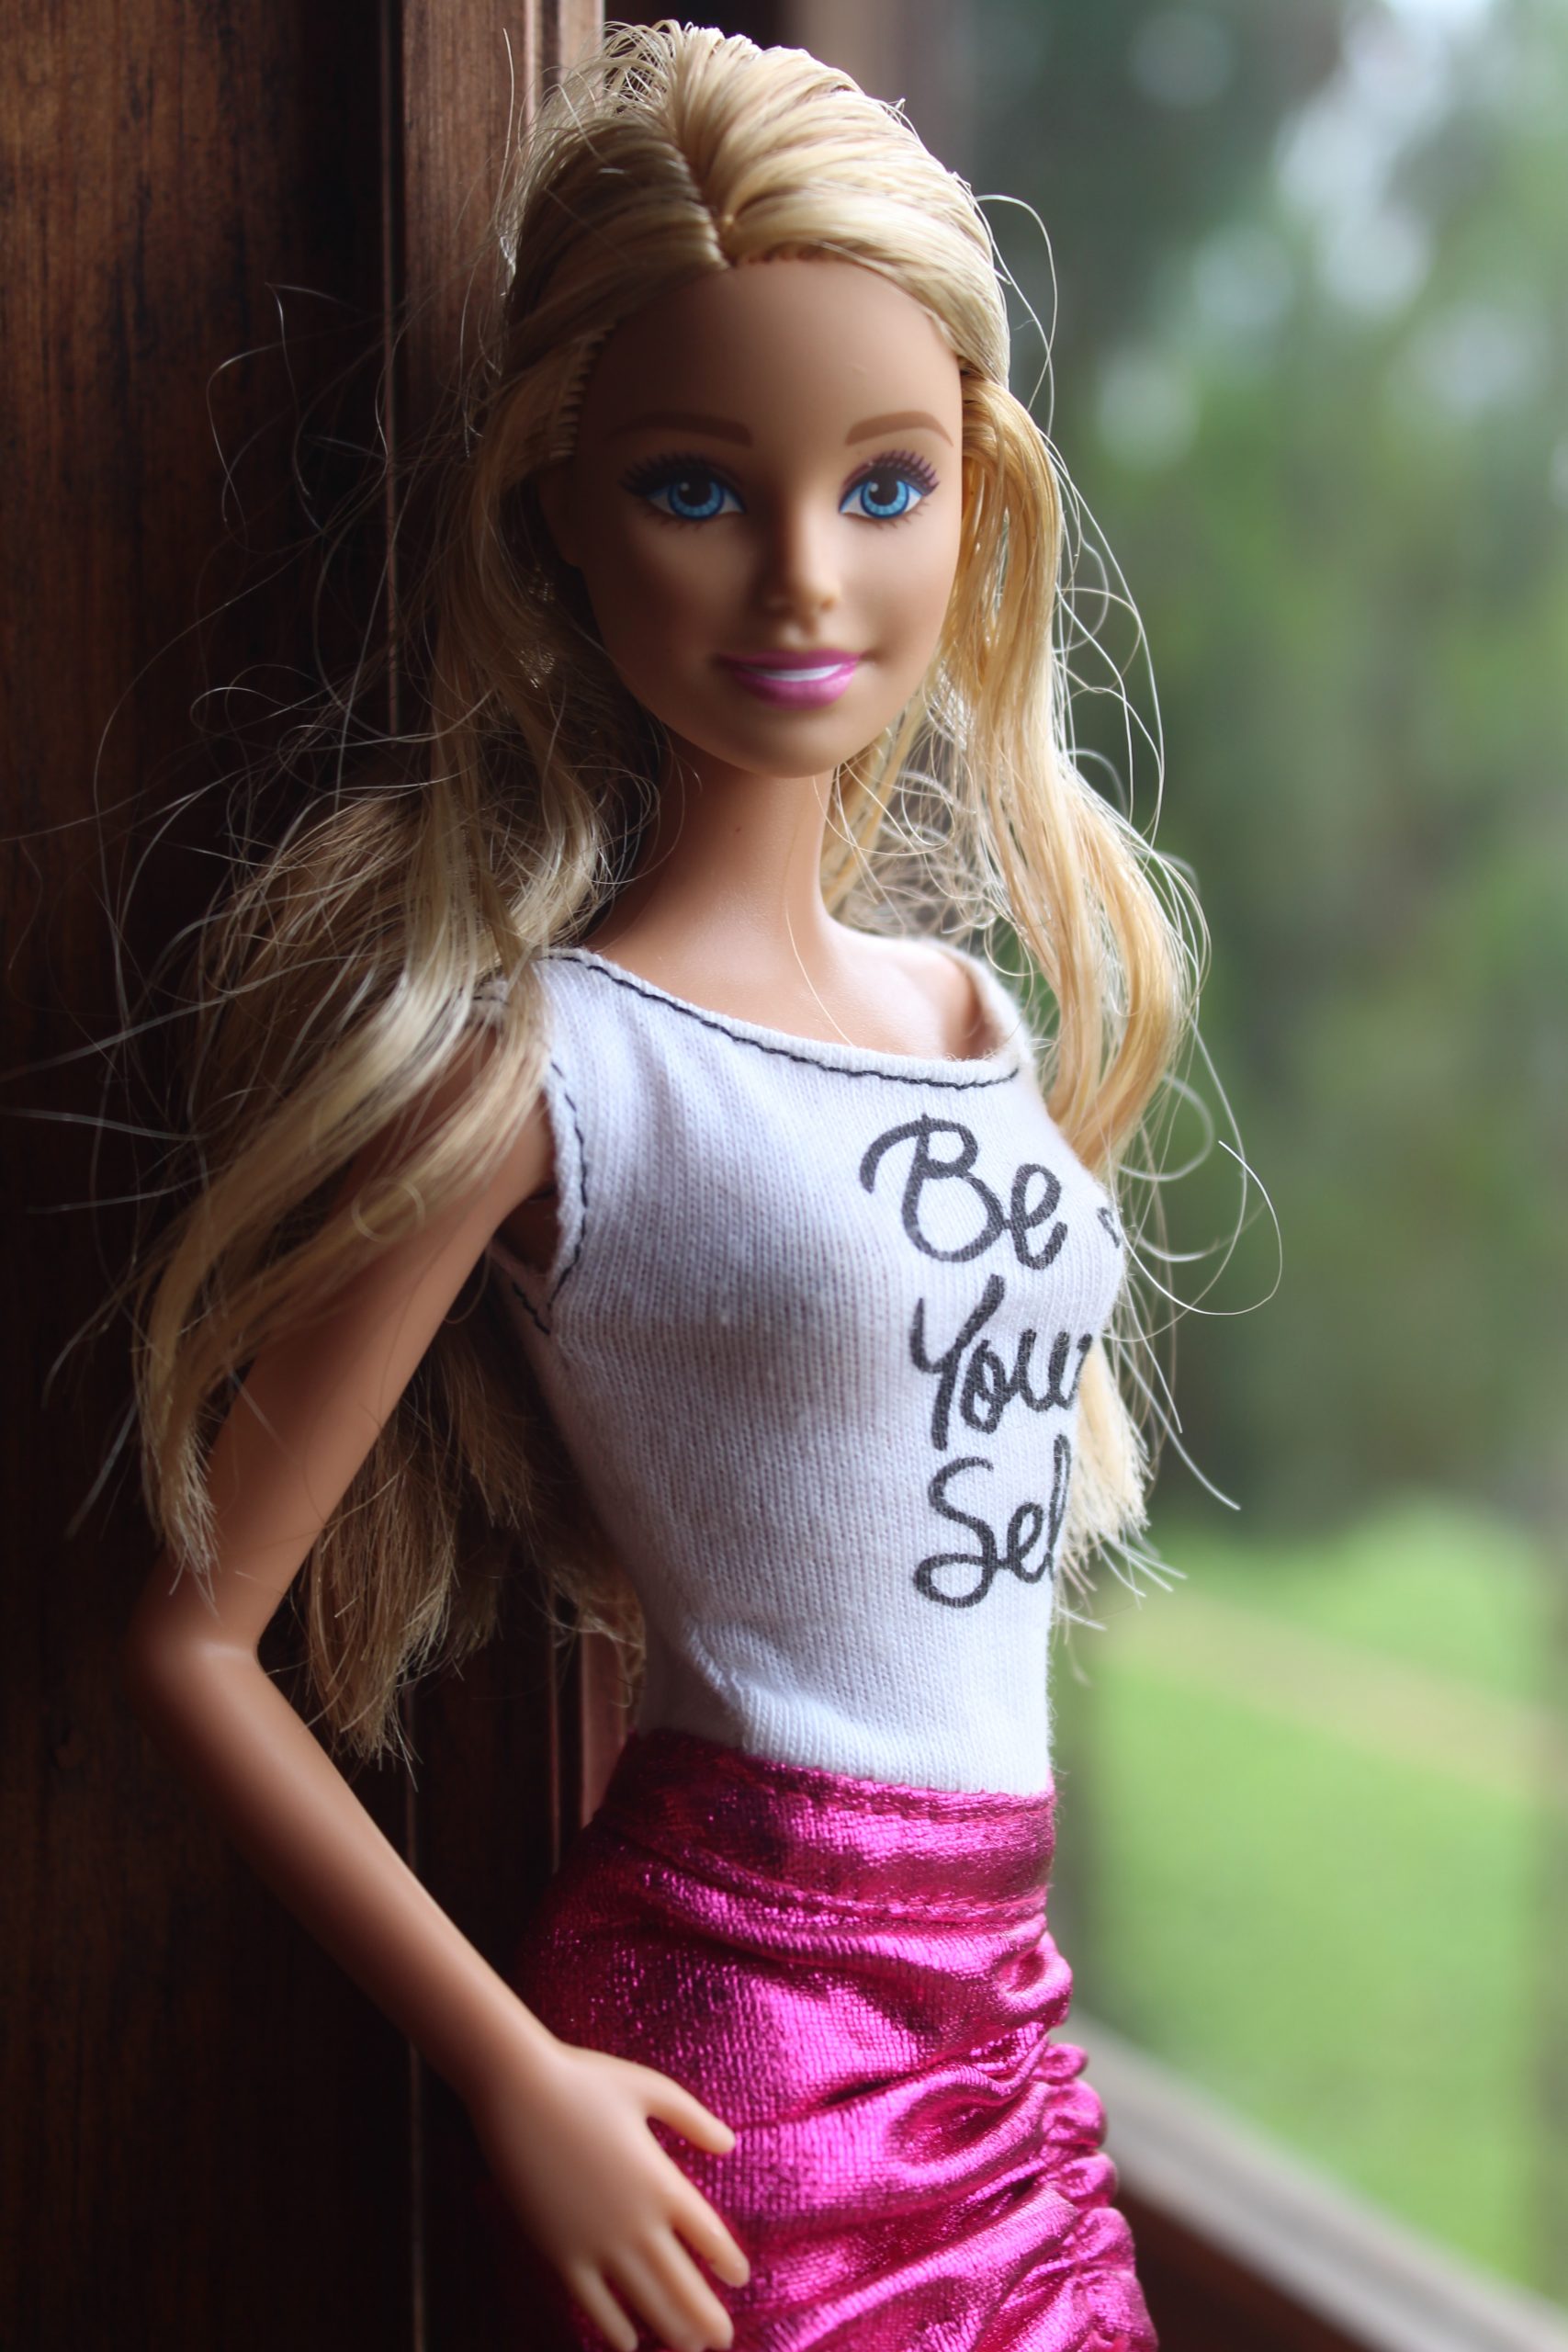 Trucco Barbie: gli step per realizzarlo